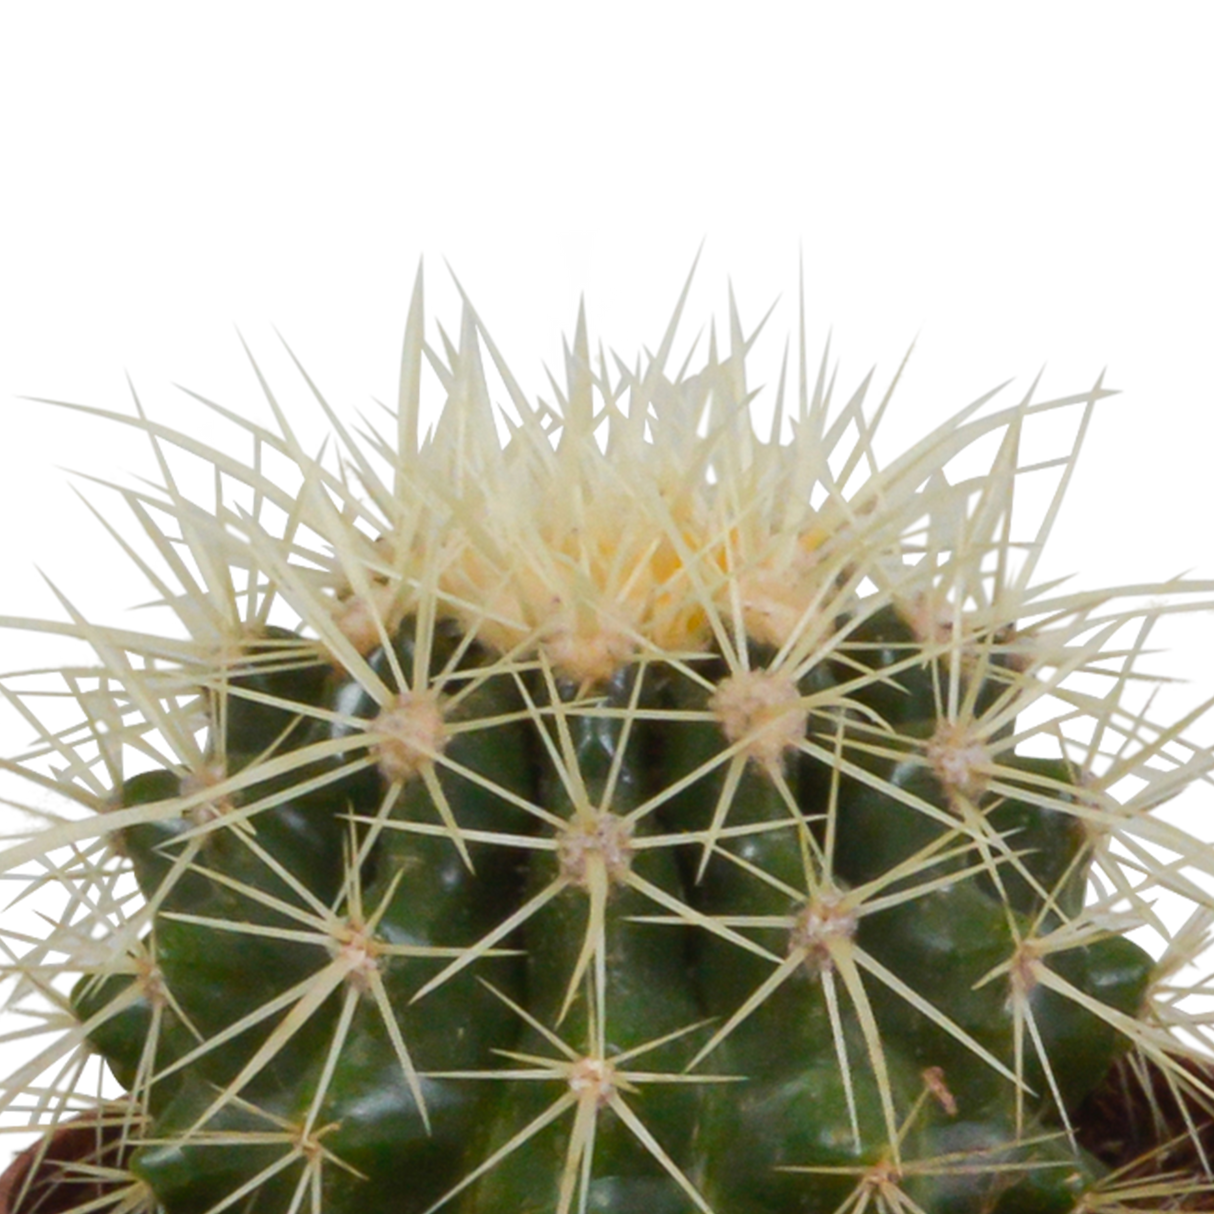 Caja de regalo de cactus y maceteros de terracota - Juego de 3 plantas, h18cm